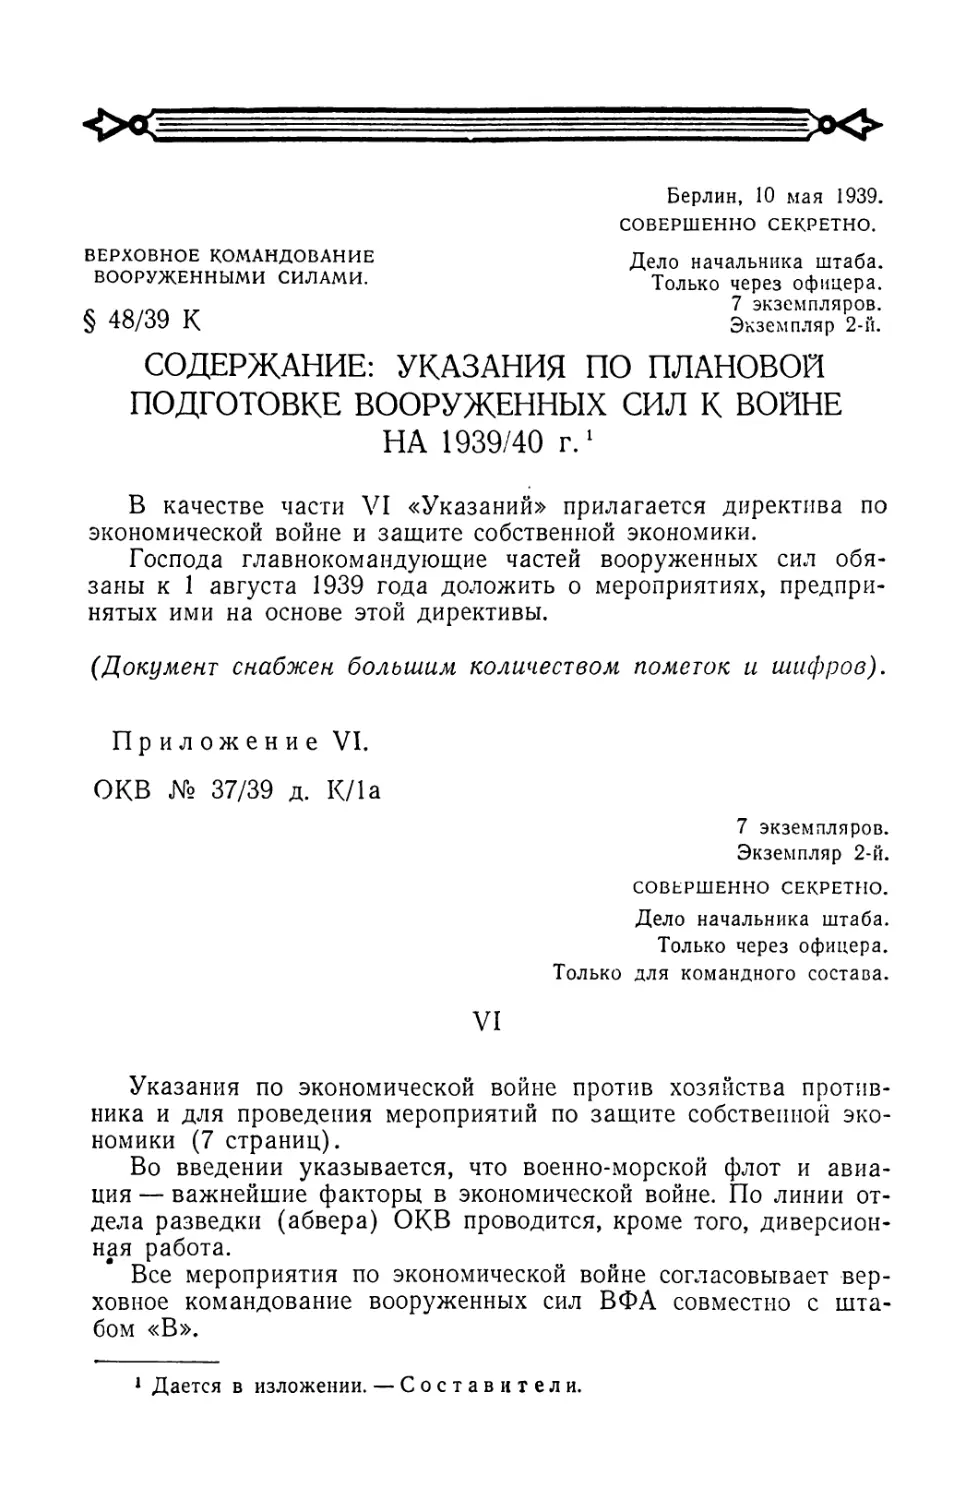 Секретная директива верховного командования вооруженными силами от 10 мая 1939 г. по экономической войне